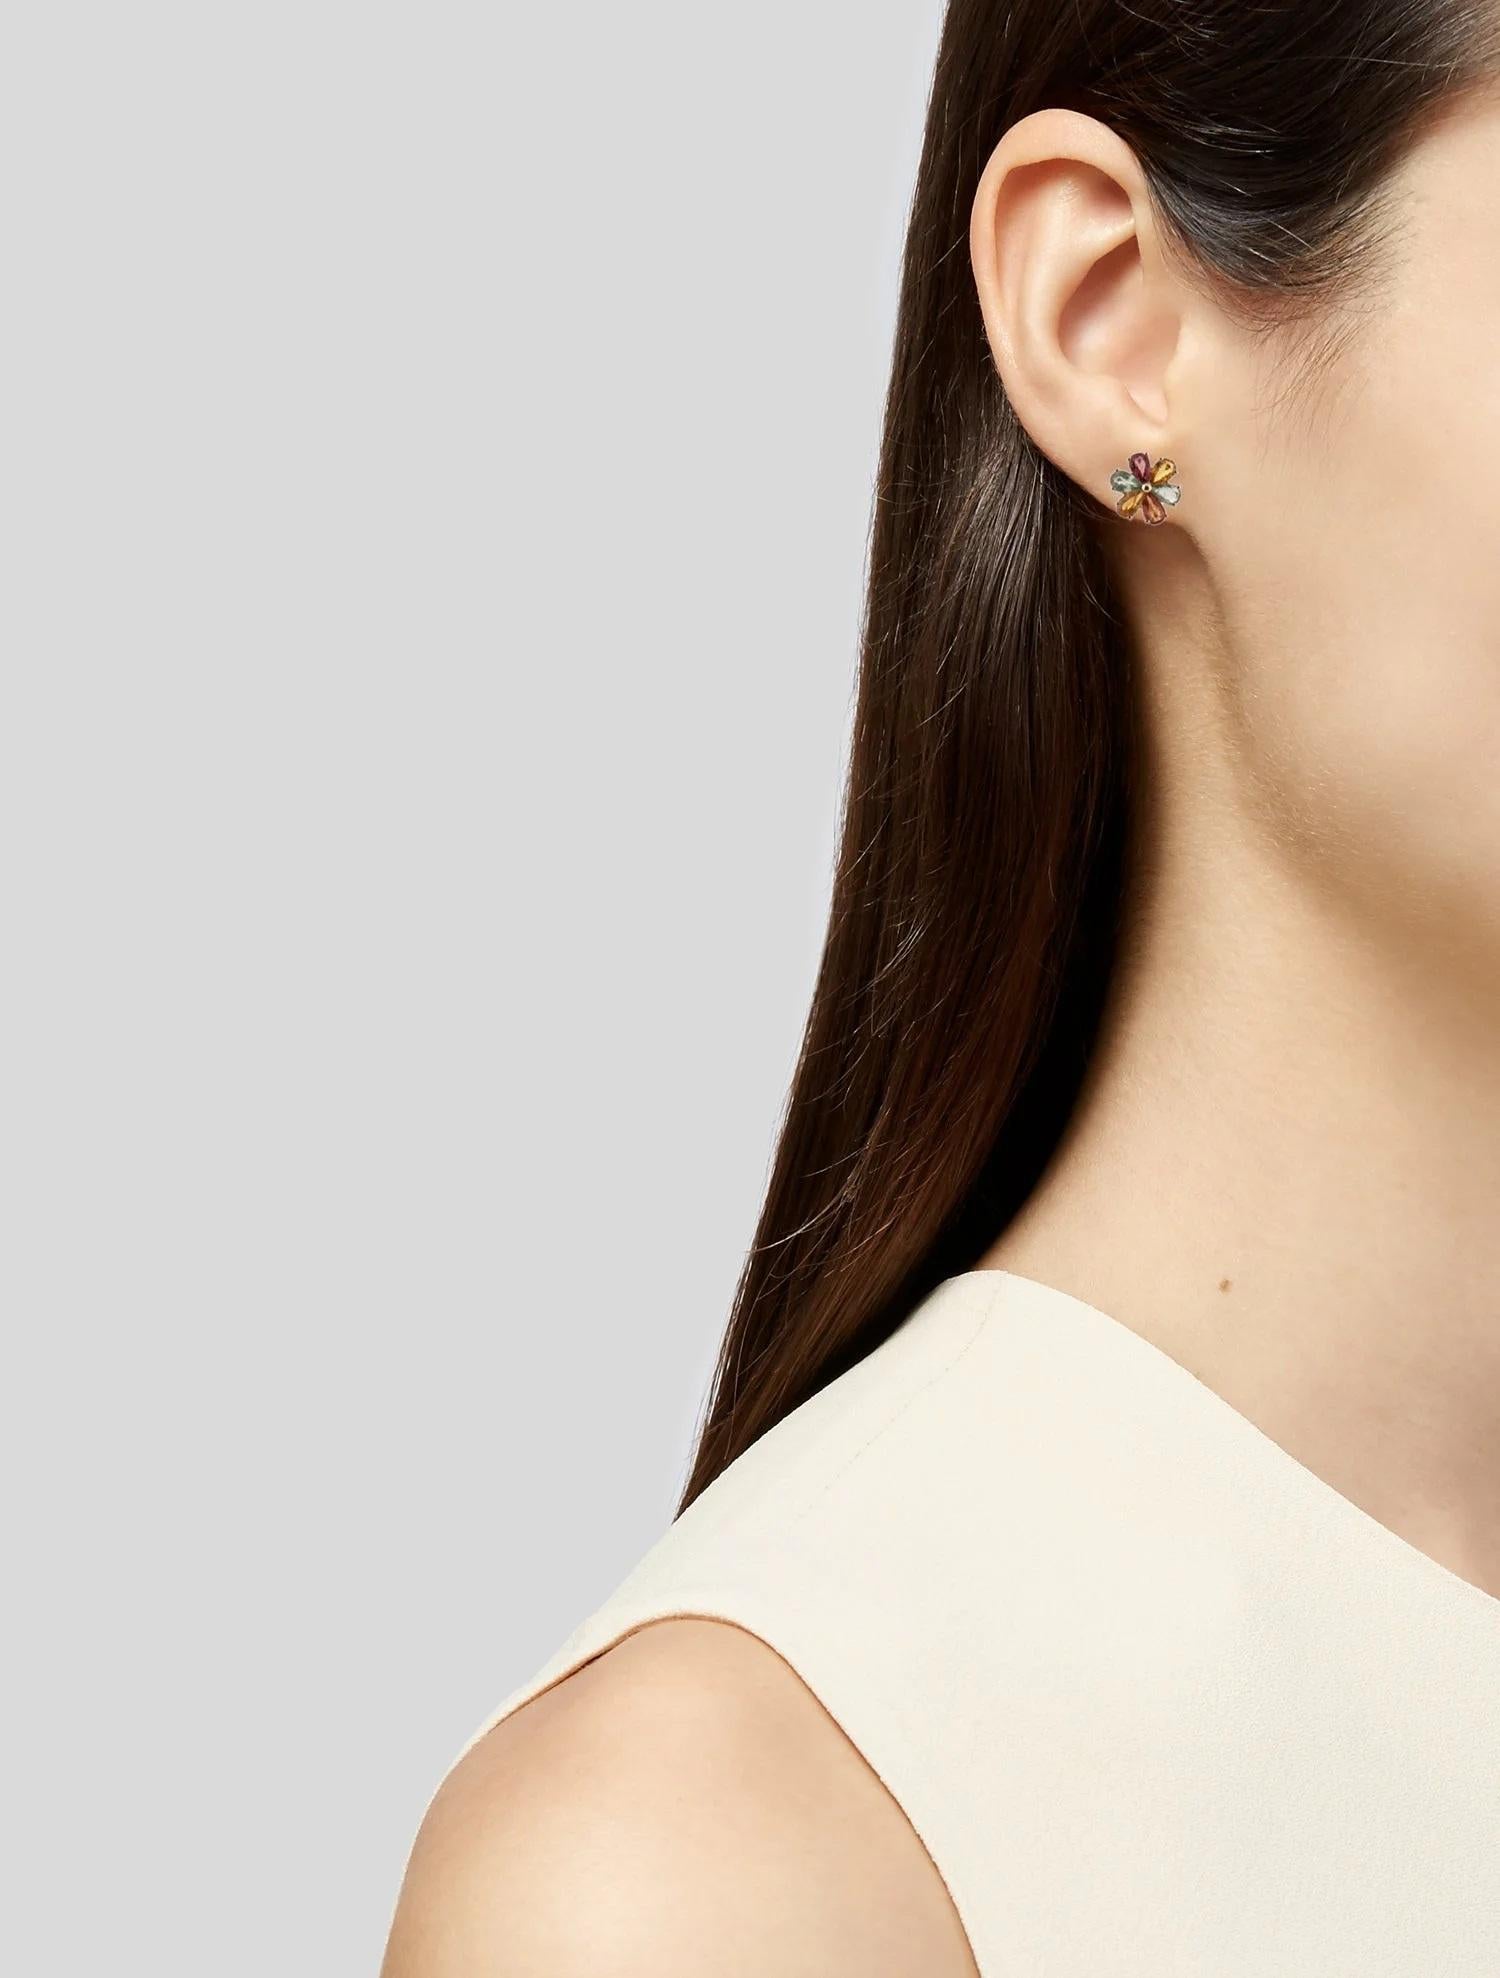 Erhöhen Sie Ihren Stil mit diesen atemberaubenden Saphir-Ohrsteckern aus 14 Karat Gelbgold, die in jedem Ohrring einen strahlenden 2,97 Karat Birnen-Brillant-Saphir aufweisen. Diese perfekt gearbeiteten Ohrringe bestehen aus insgesamt 12 leuchtenden